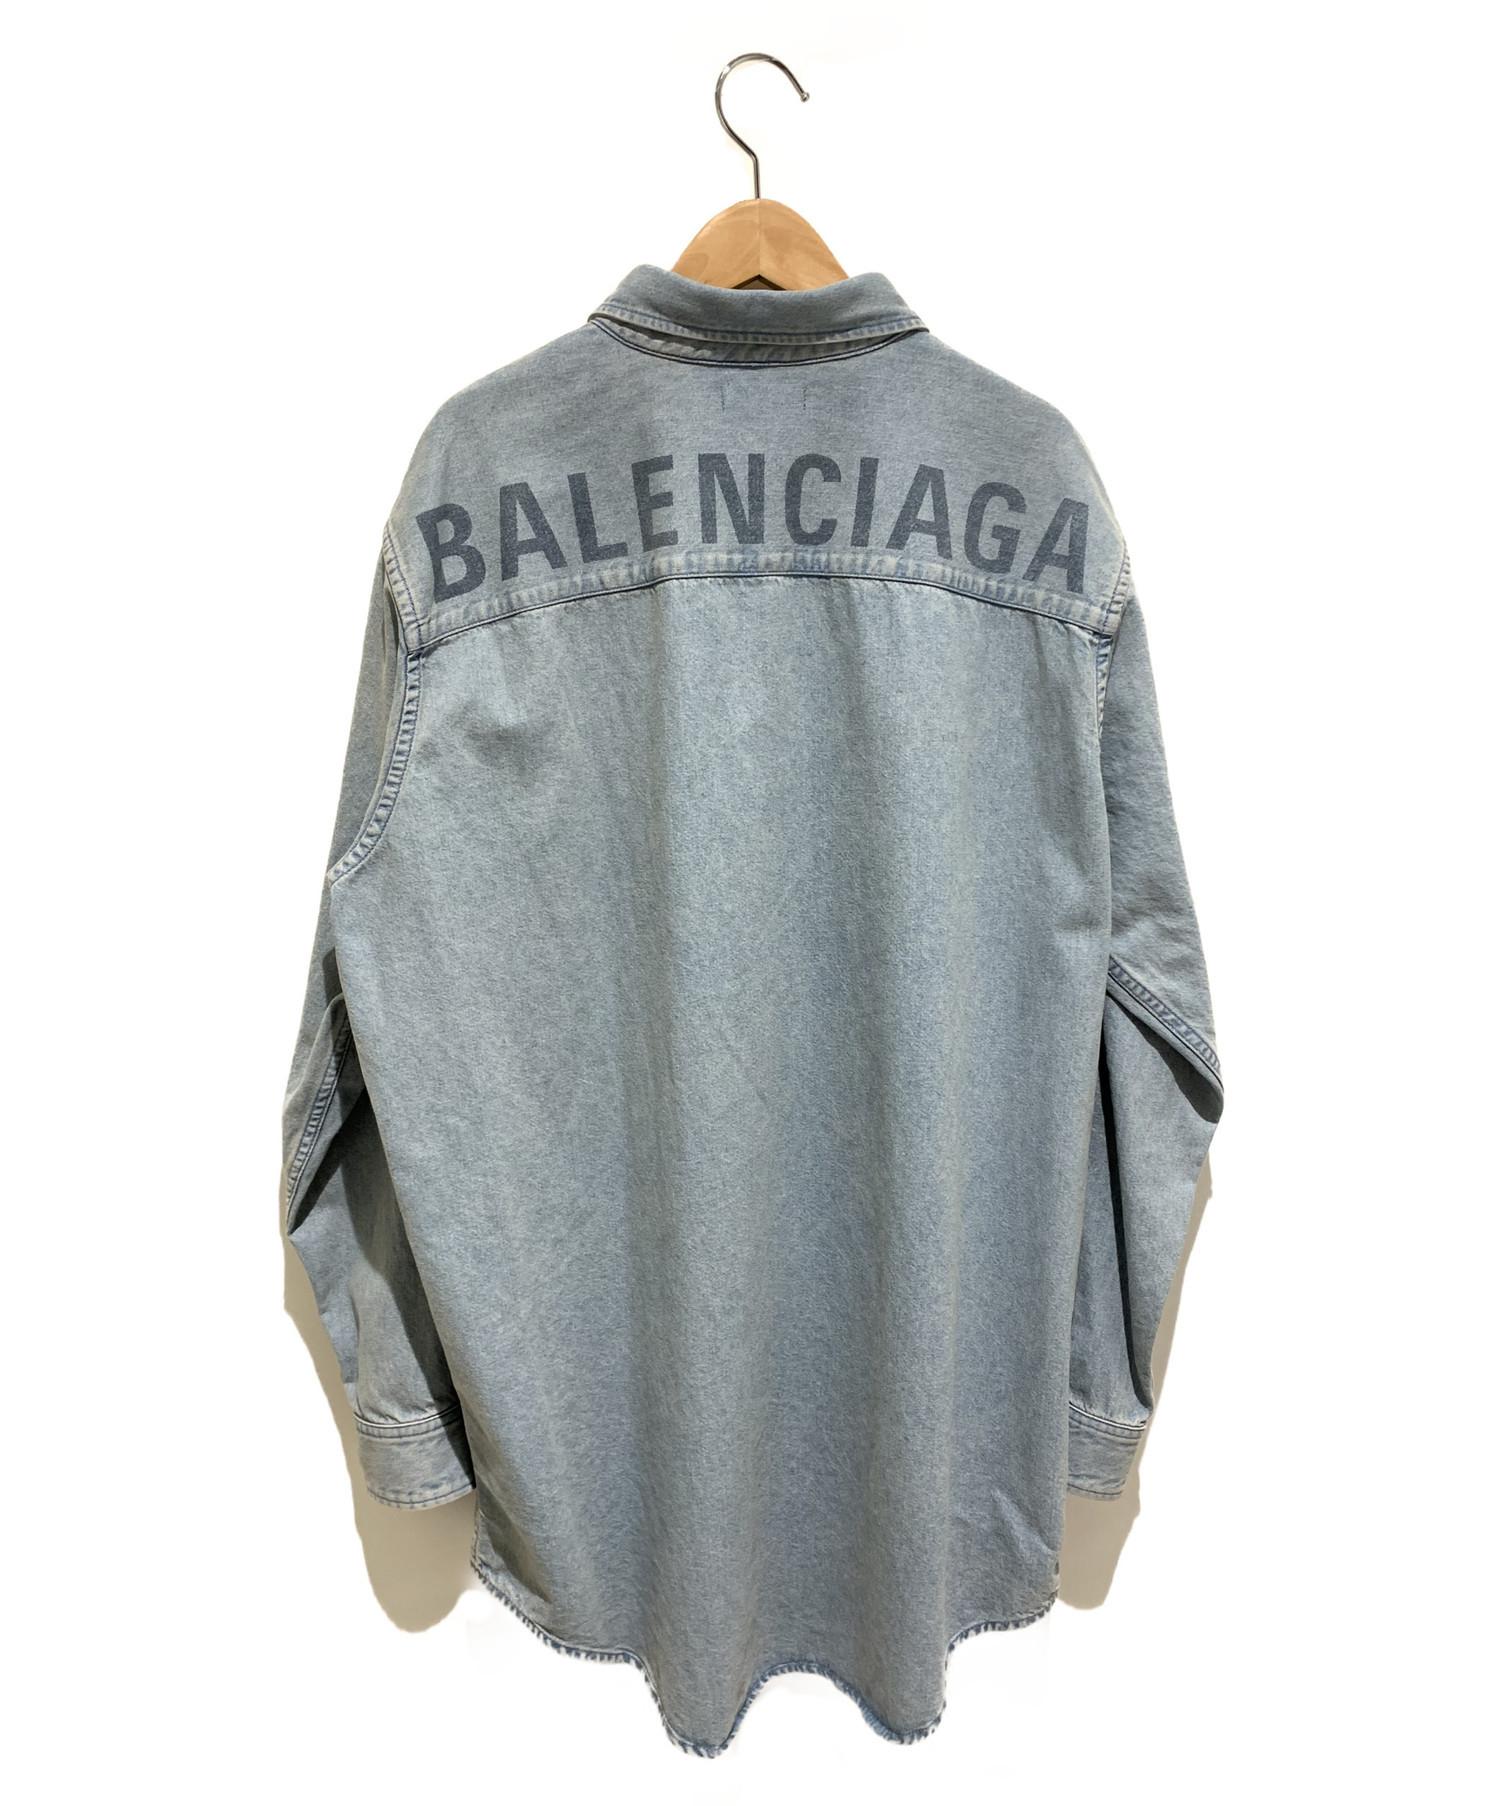 BALENCIAGA (バレンシアガ) 19SS/バッグロゴウォッシュドデニムシャツ インディゴ サイズ:37 未使用品